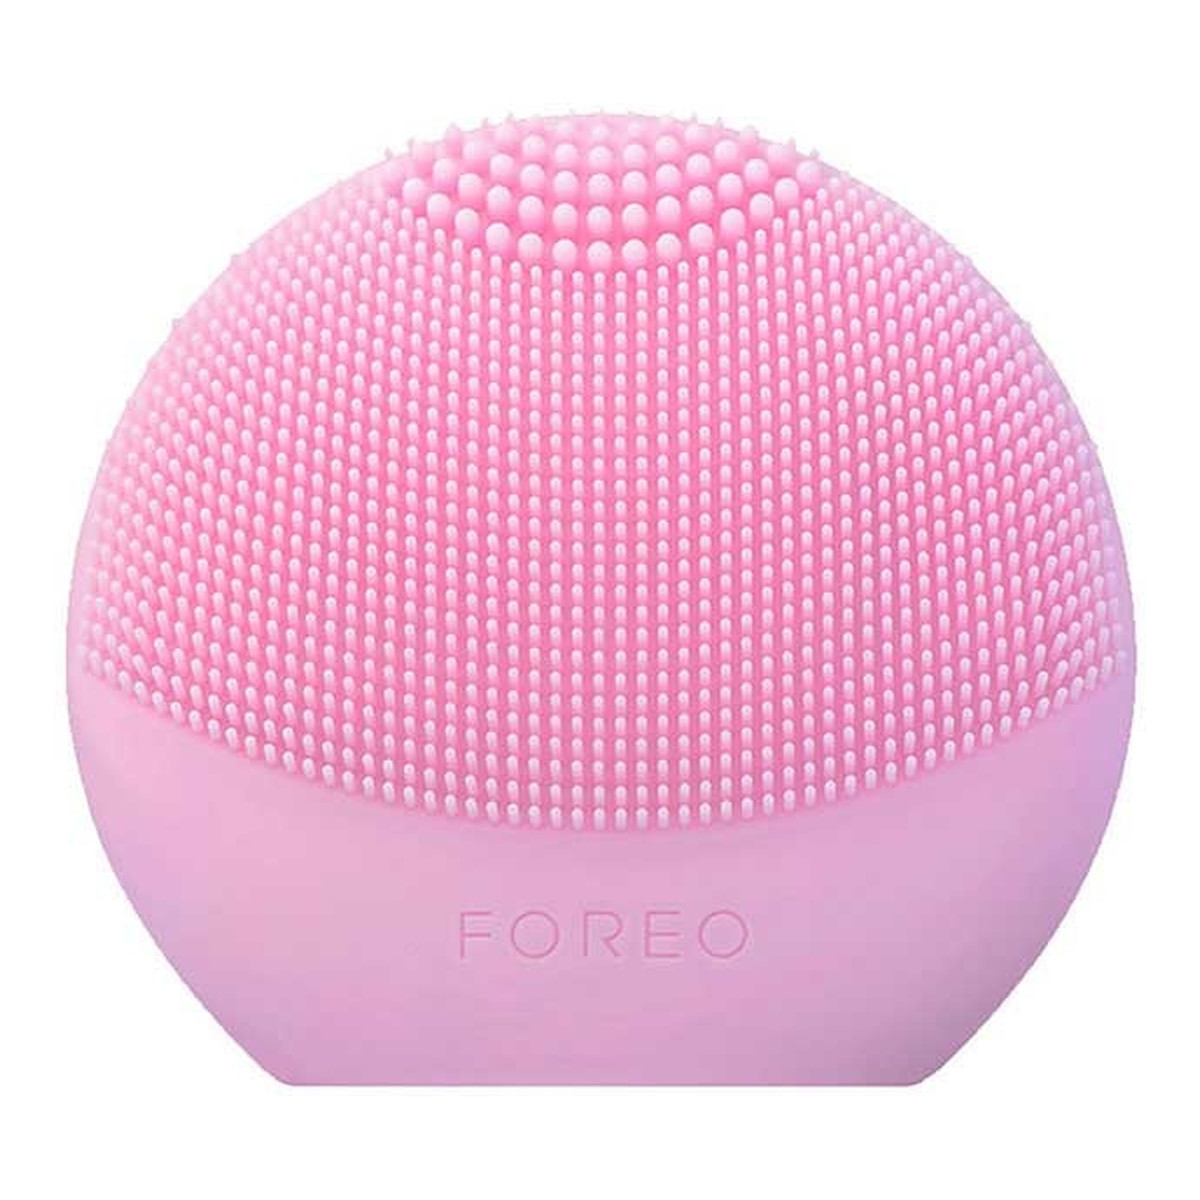 Foreo Luna fofo szczoteczka do oczyszczania twarzy pearl pink